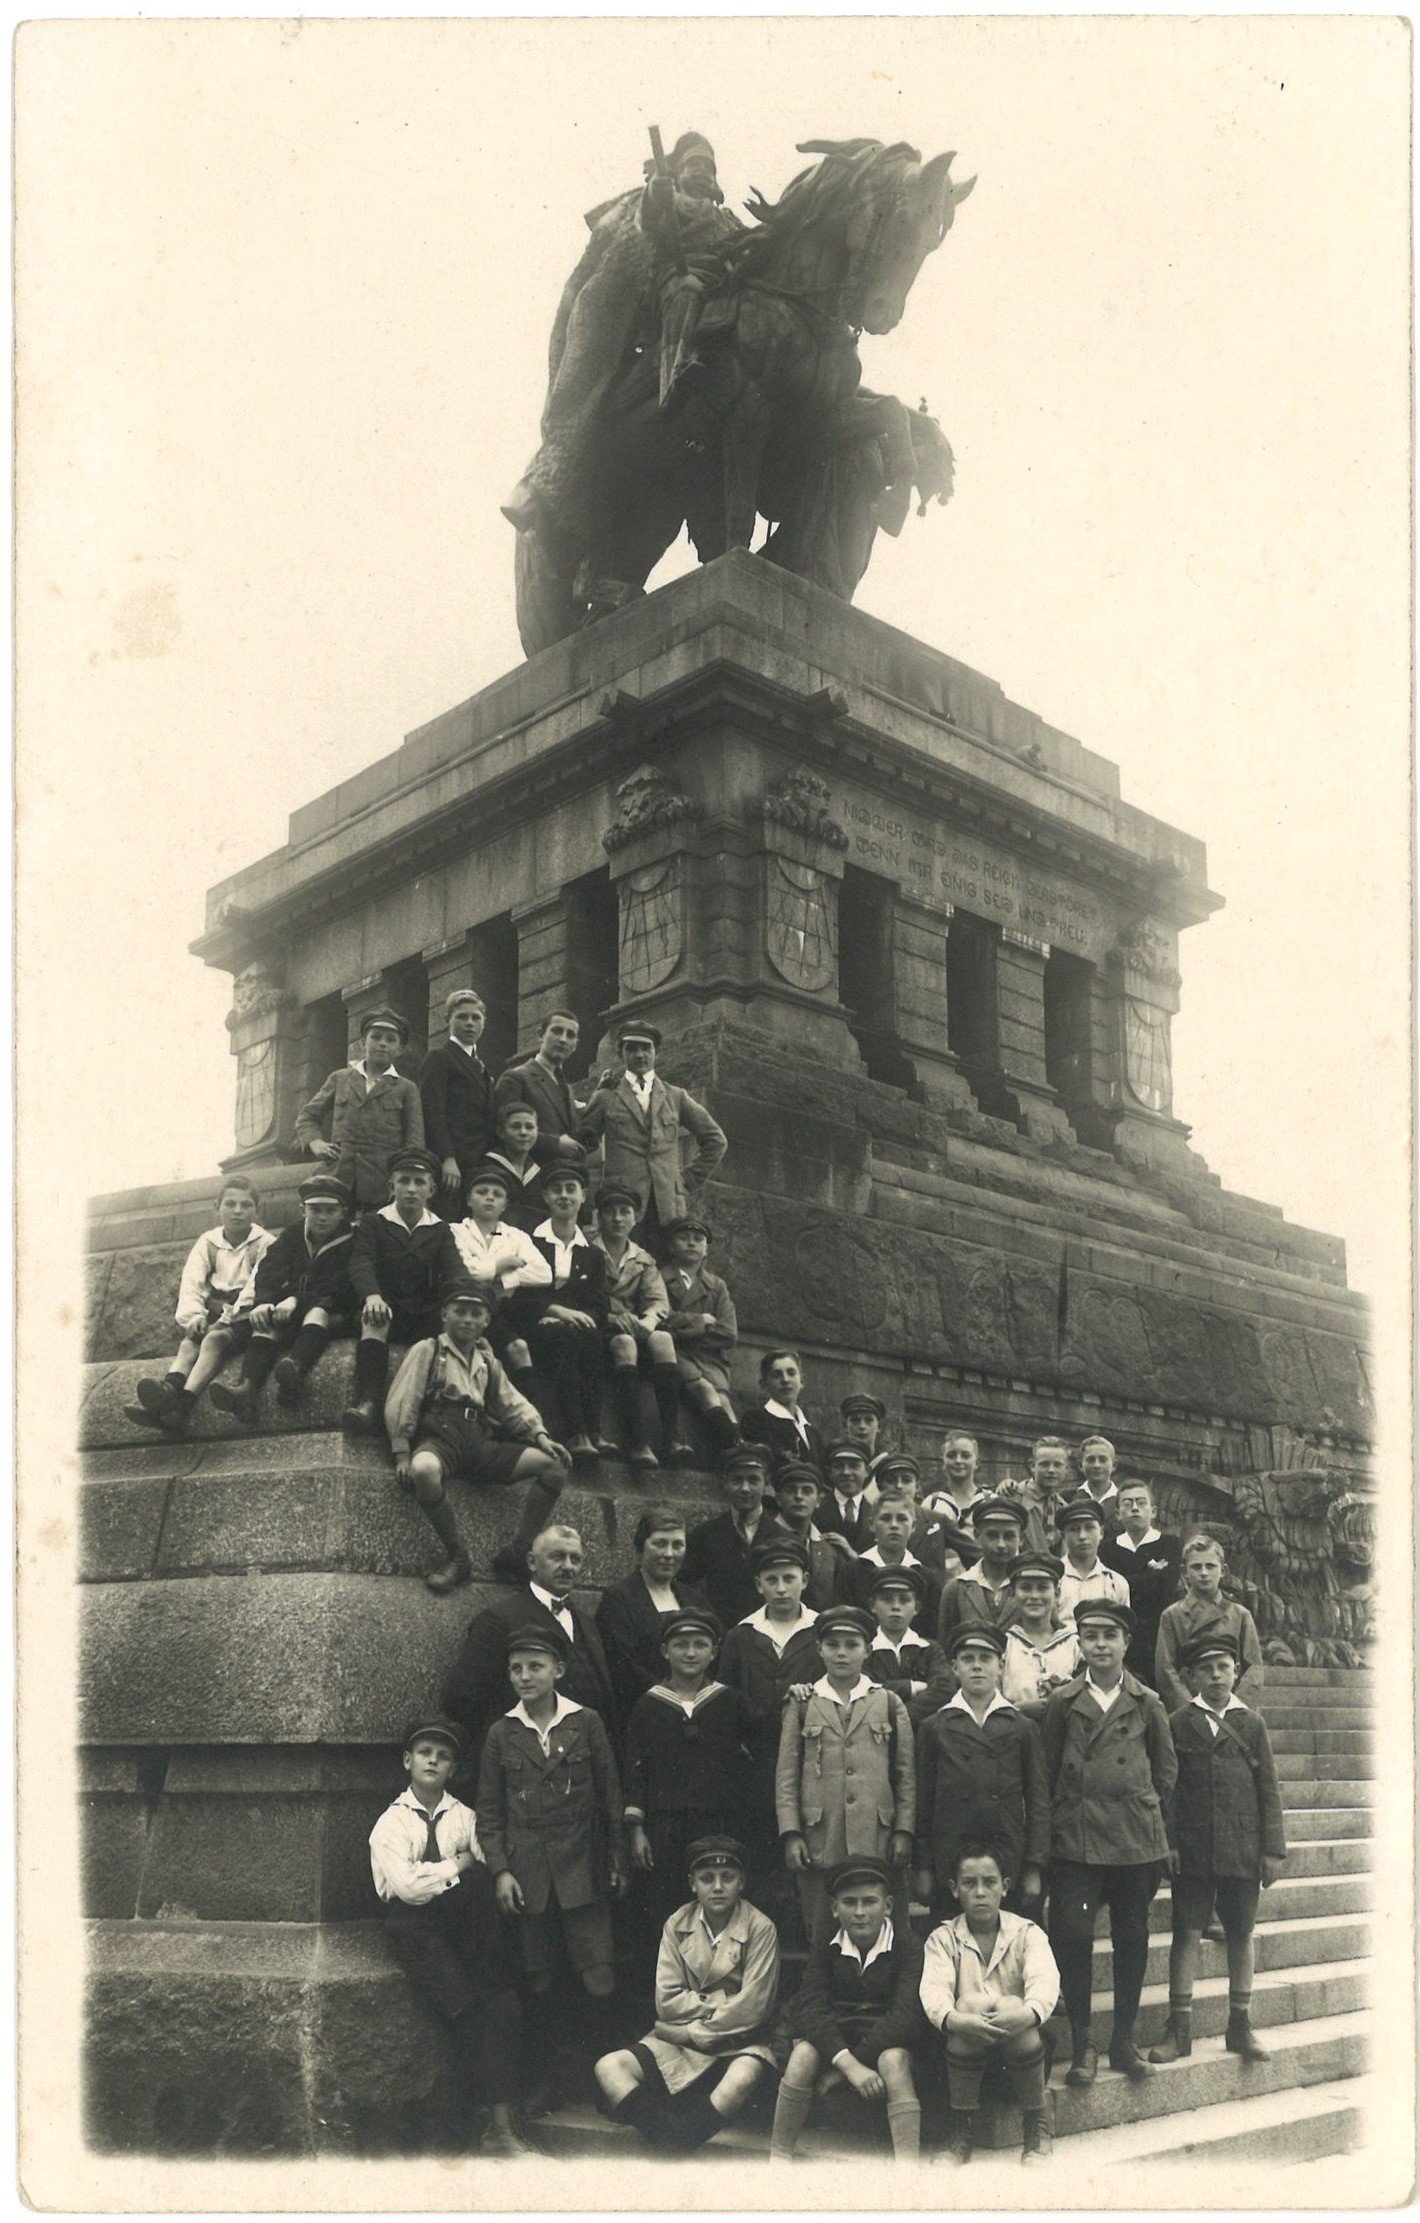 Koblenz: Schülergruppe am Deutschen Eck um 1930 (Landesgeschichtliche Vereinigung für die Mark Brandenburg e.V., Archiv CC BY)